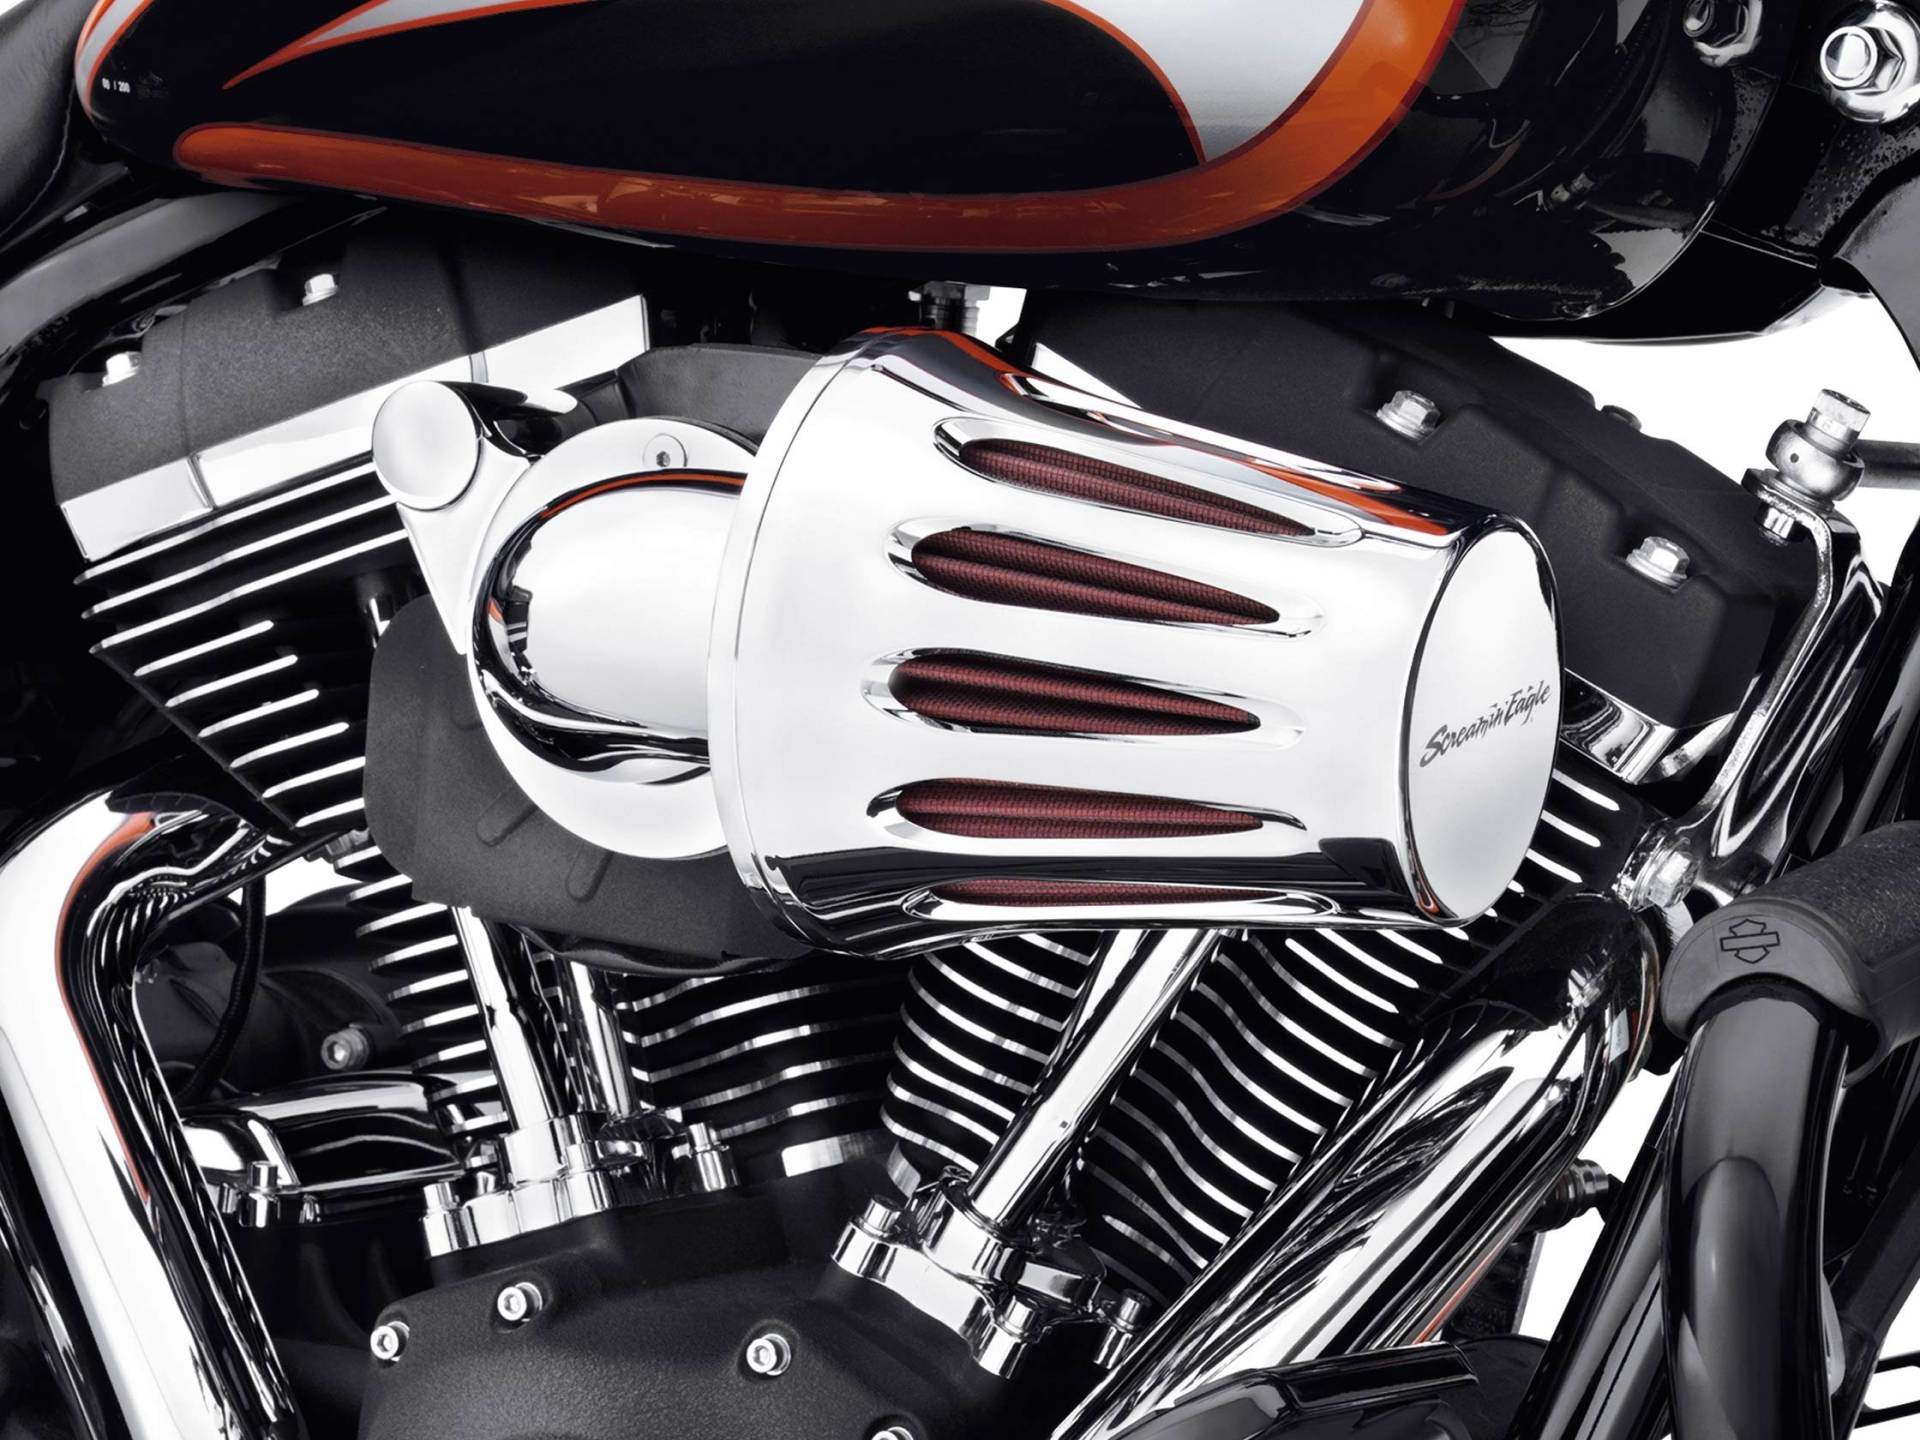 Luftfilter Abdeckung verchromt Screamin Eagle Teardrop Harley Davidson Motorräder von GZM